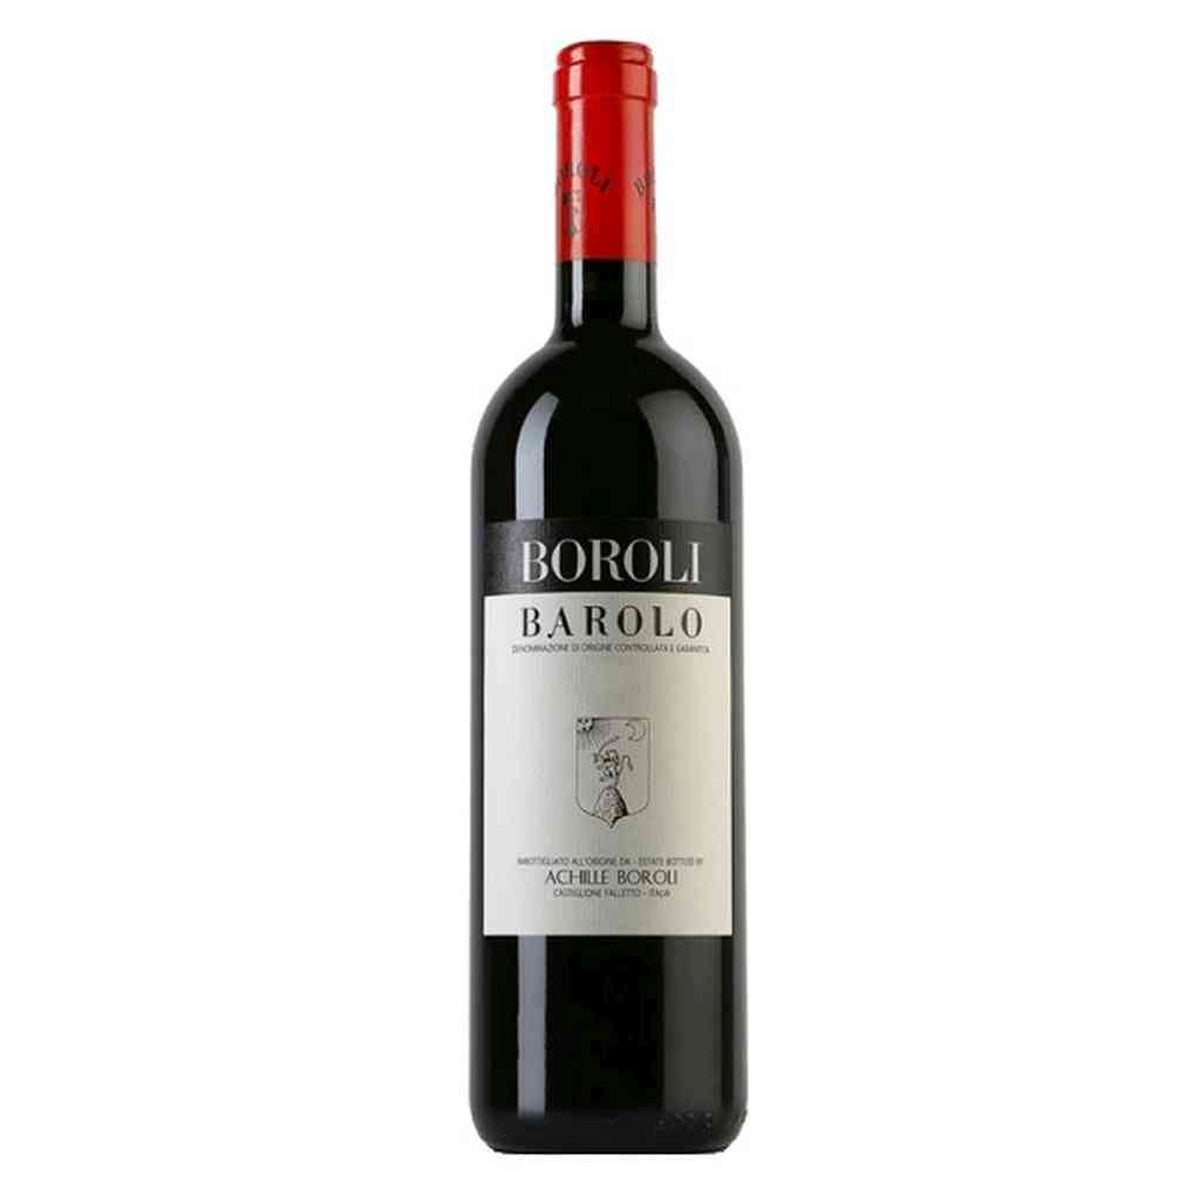 Boroli-Rotwein-Nebbiolo-2013 Barolo Classico-WINECOM